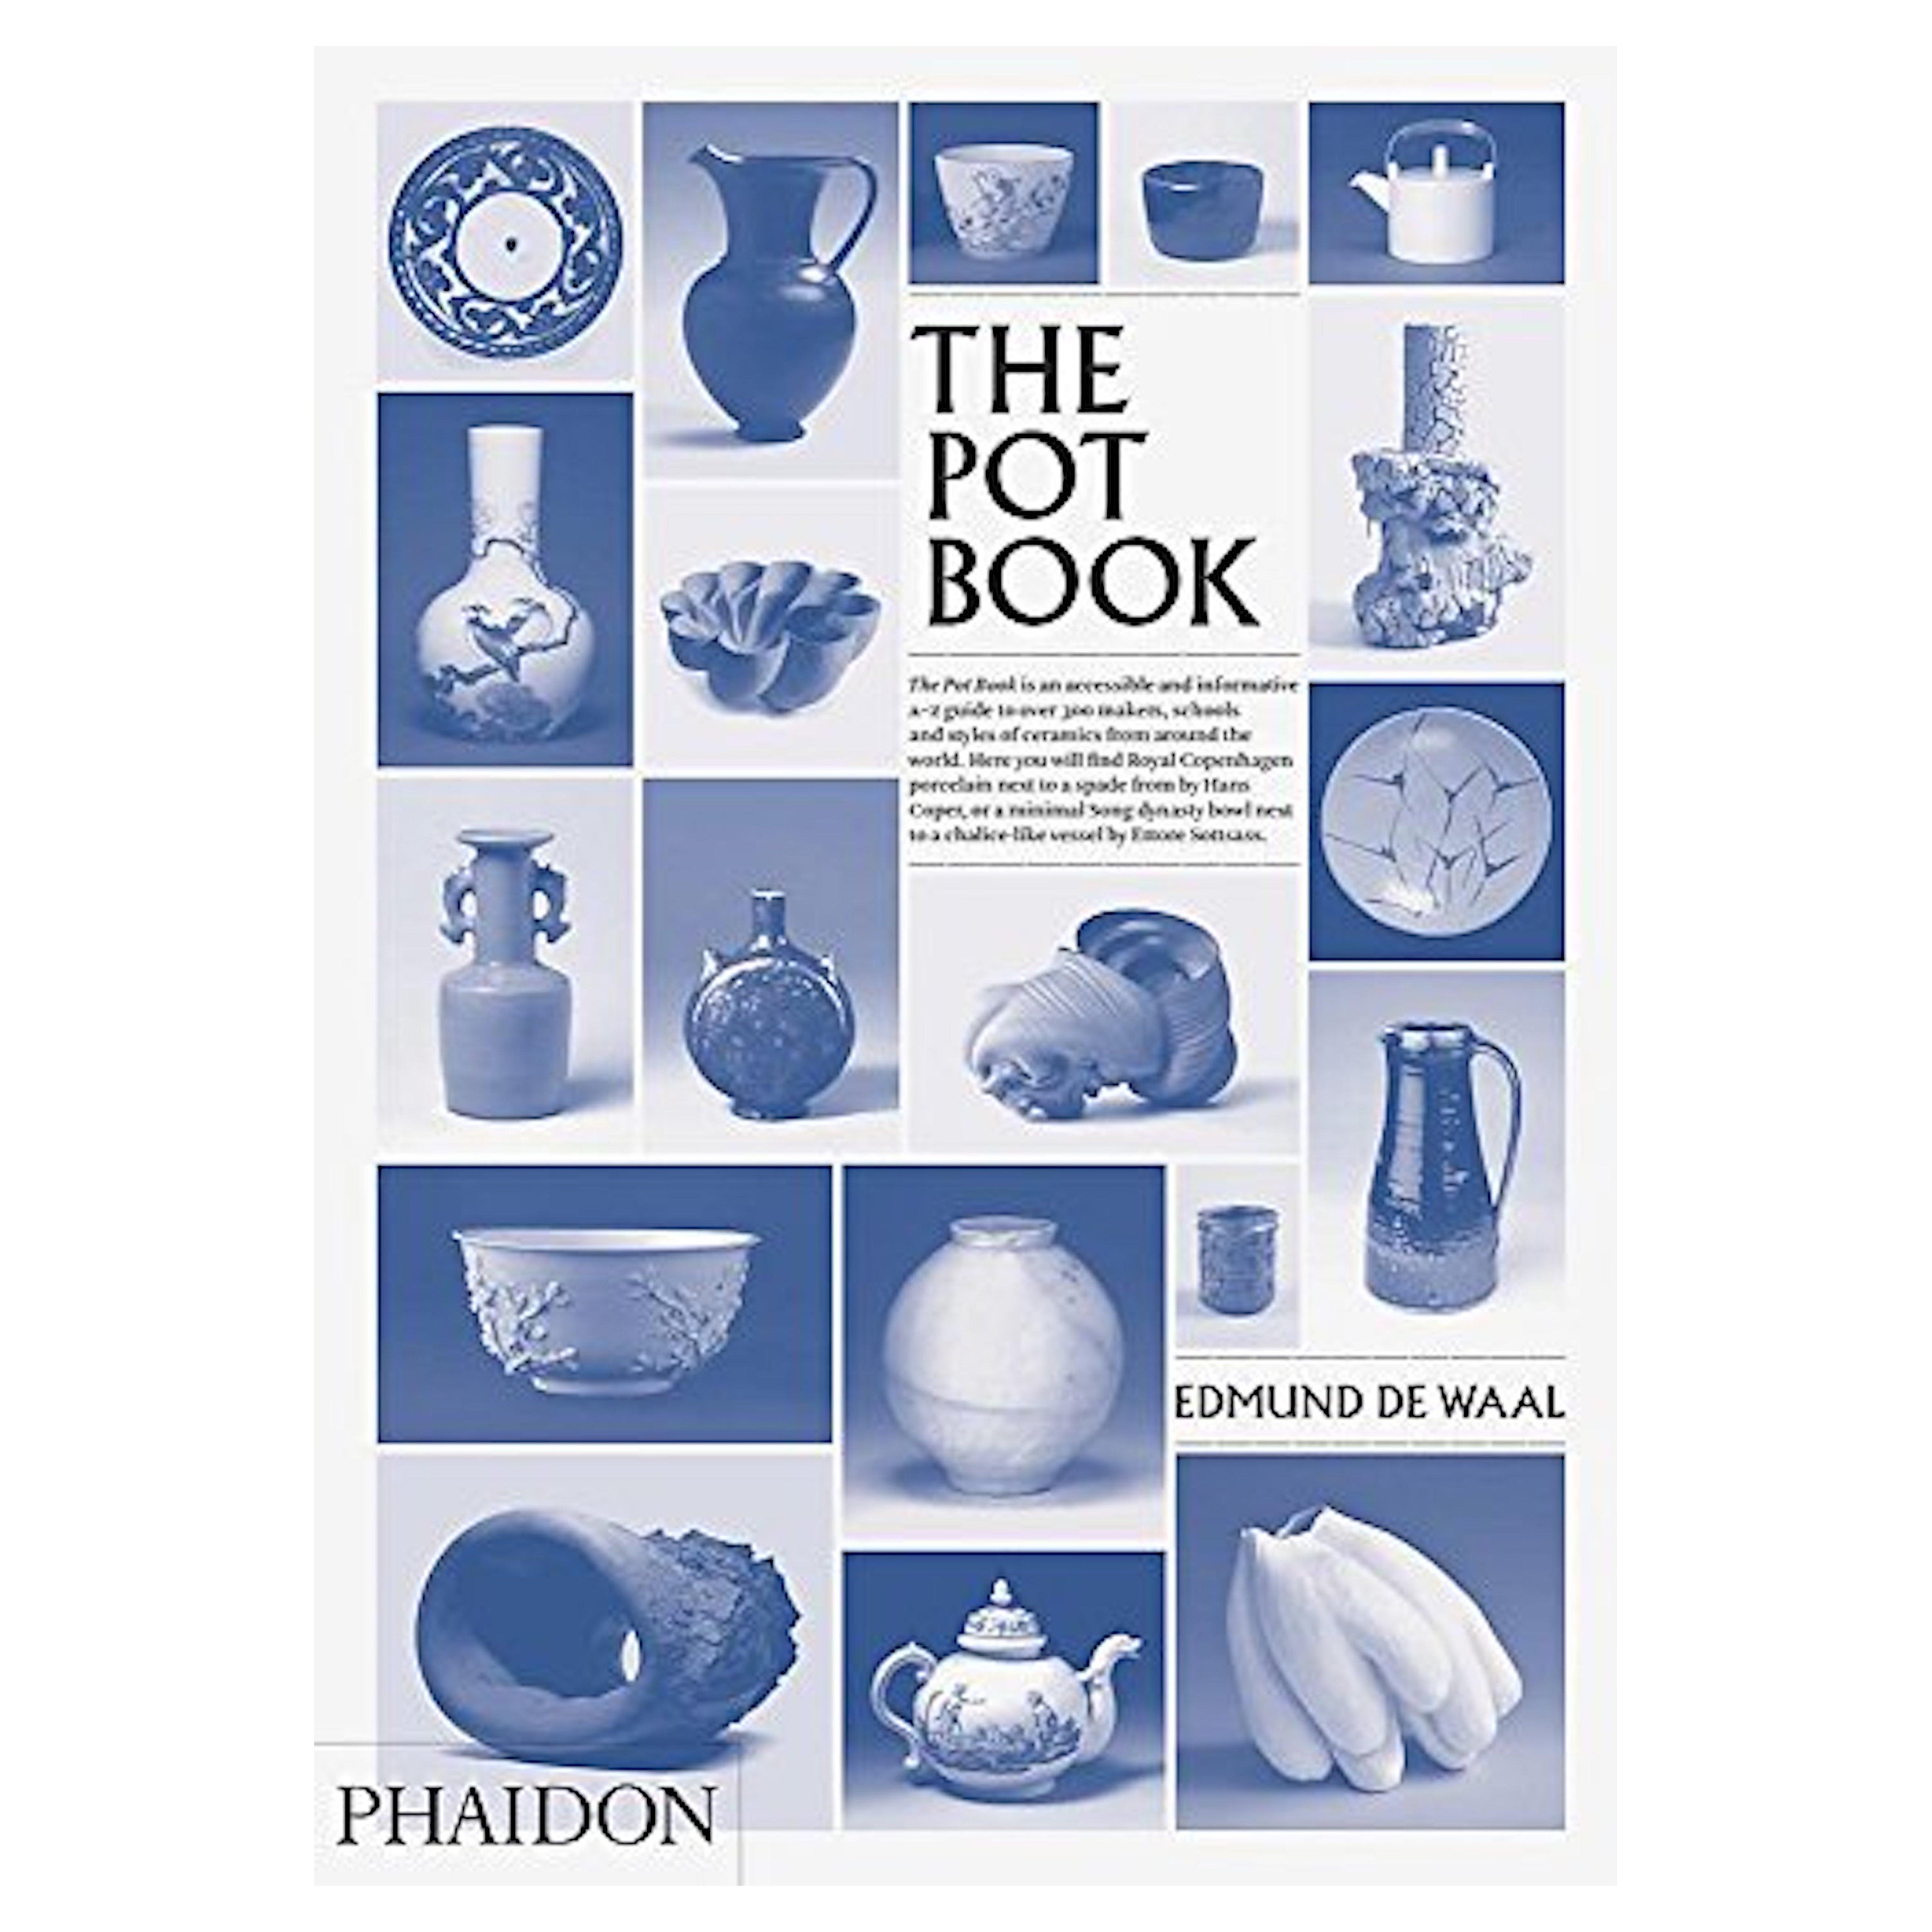 The Pot Book, Edmund de Waal